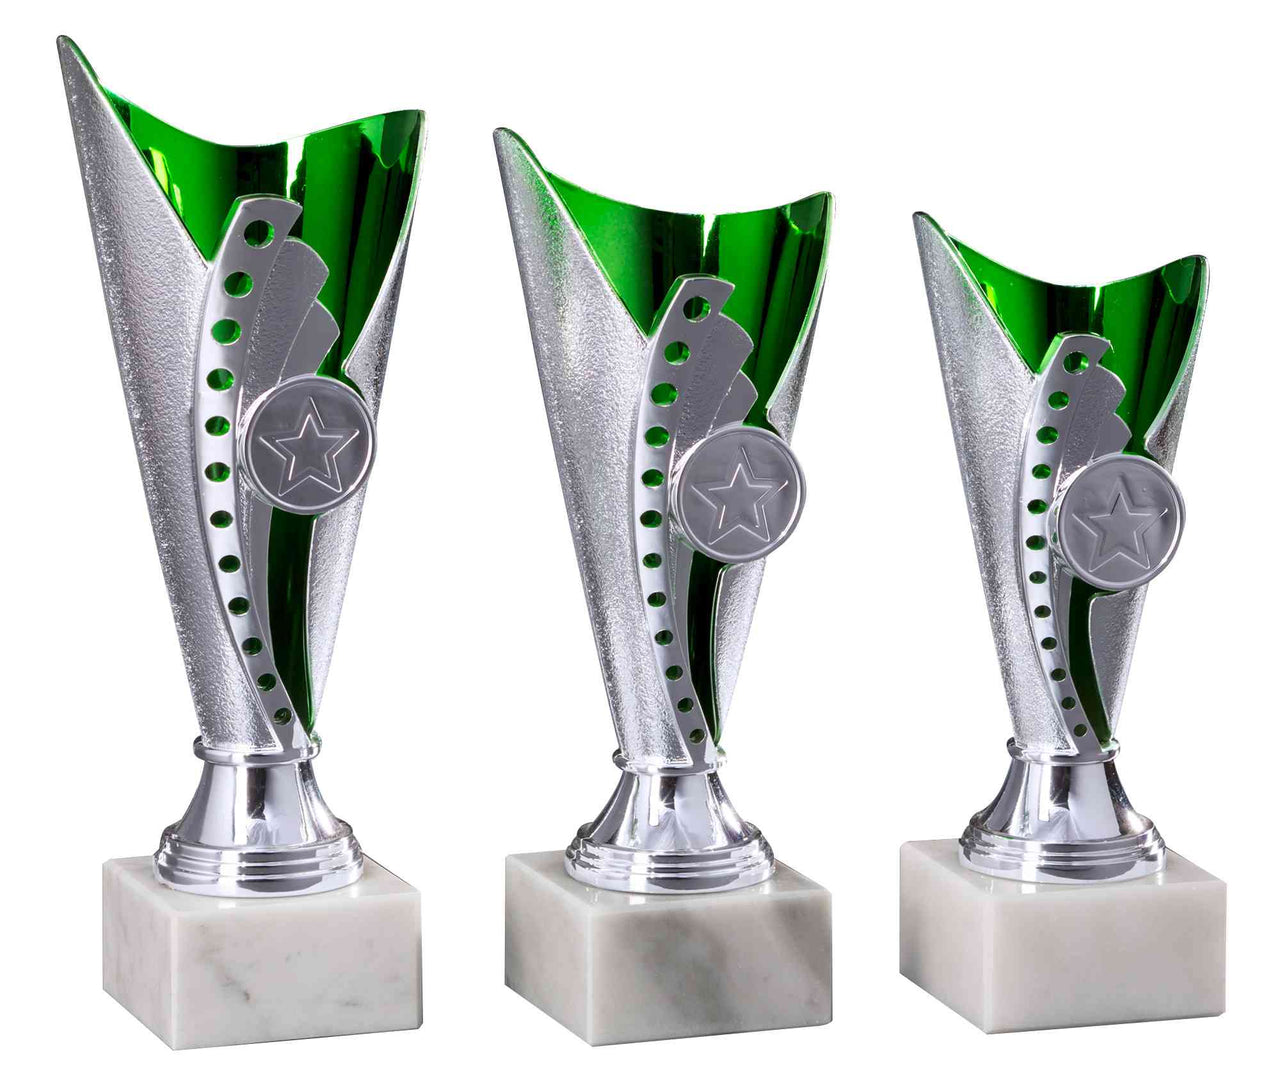 Drei identische silberne und grüne Pokale Bad Salzuflen 3-er Pokalserie 170 mm – 210 mm PK754590-3-E25 mit Sternemblemen, montiert auf weißen Marmorsockeln, nebeneinander ausgestellt.